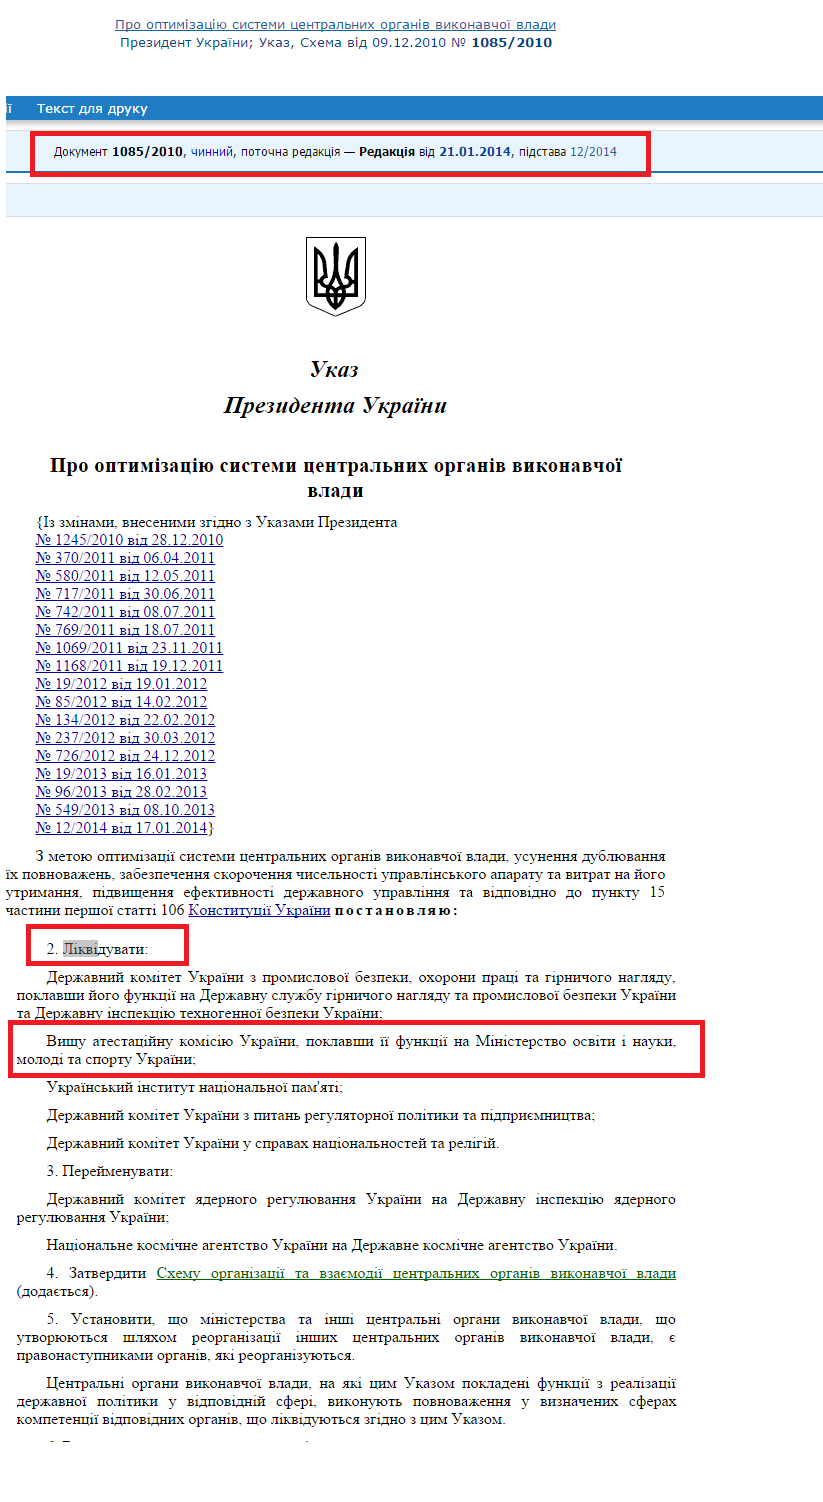 http://zakon1.rada.gov.ua/laws/show/1085/2010